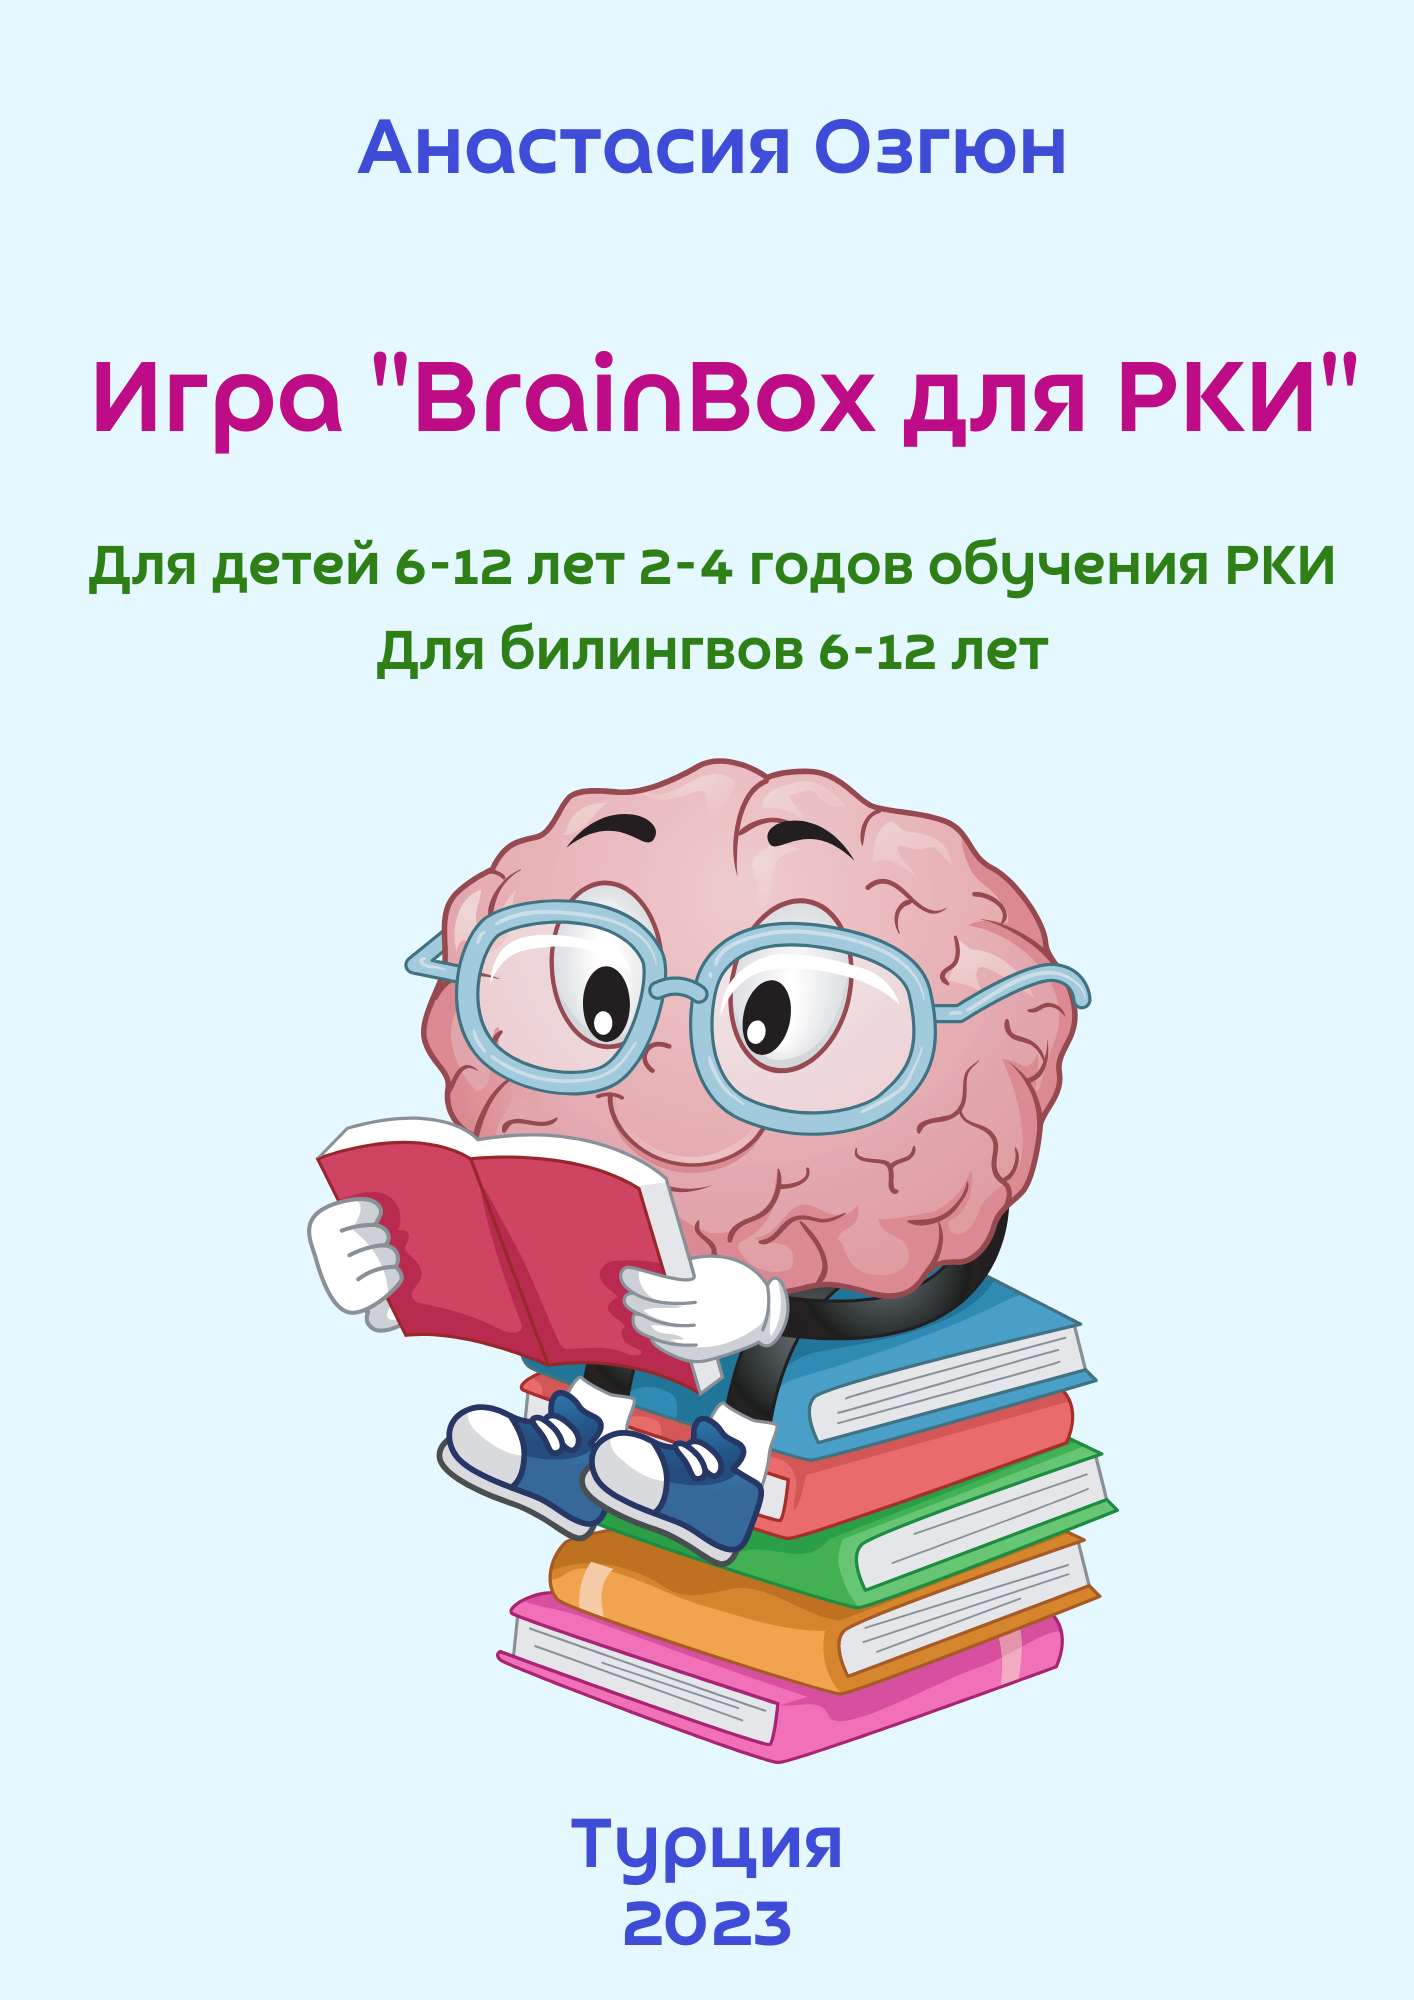 Игра BrainBox для детей РКИ